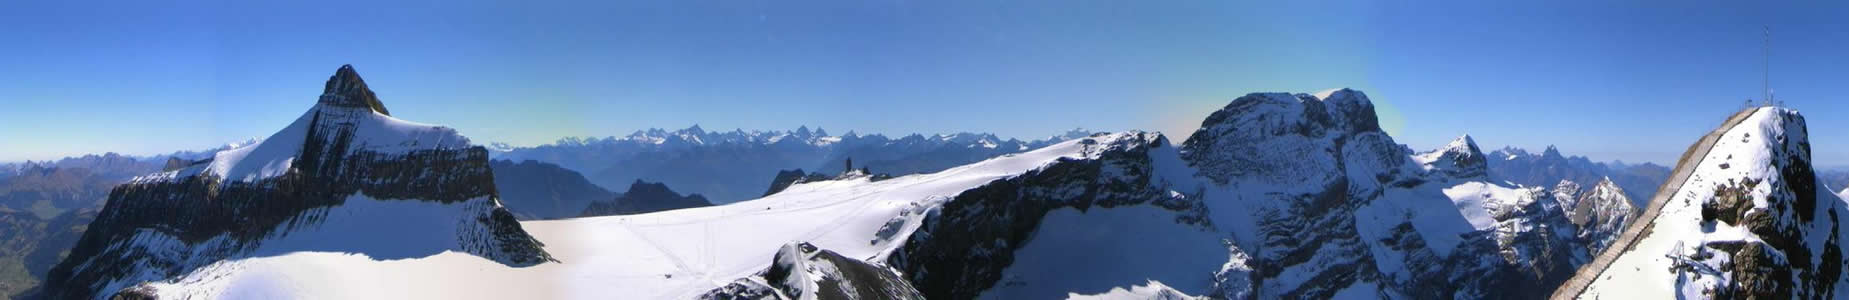 Glacier 3000 - Oldenhorn